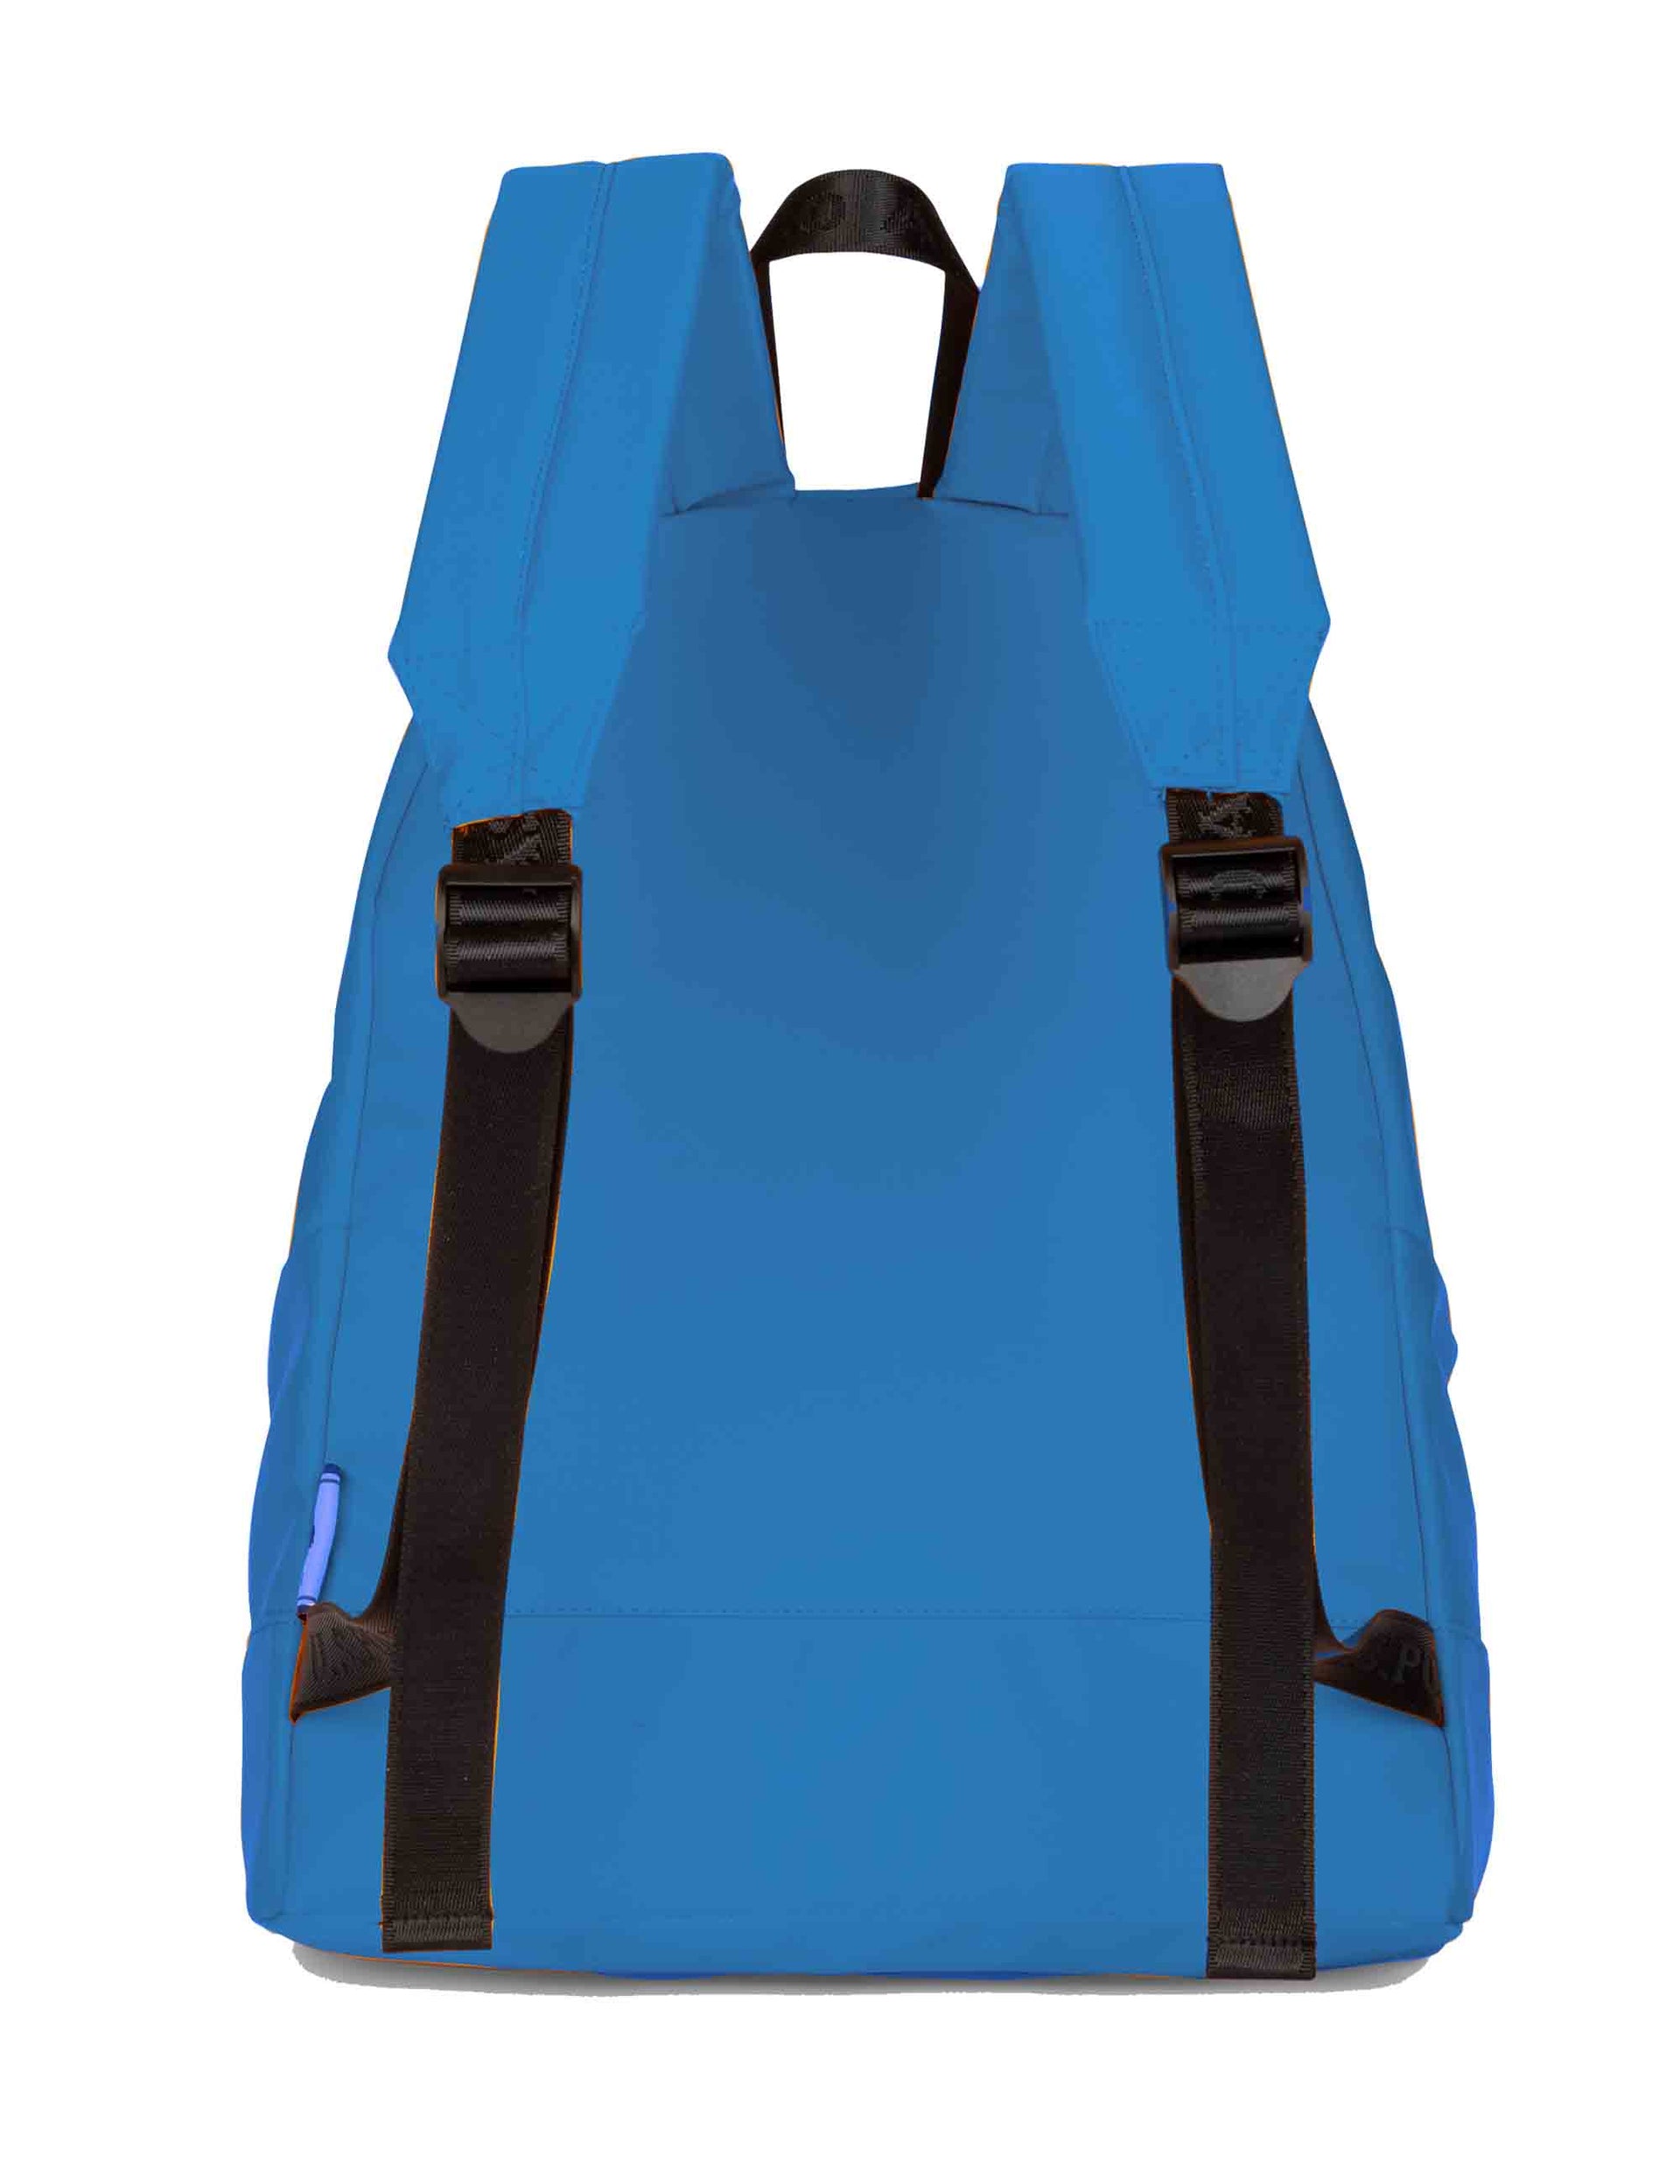 Bigfork men's backpacks in turquoise nylon